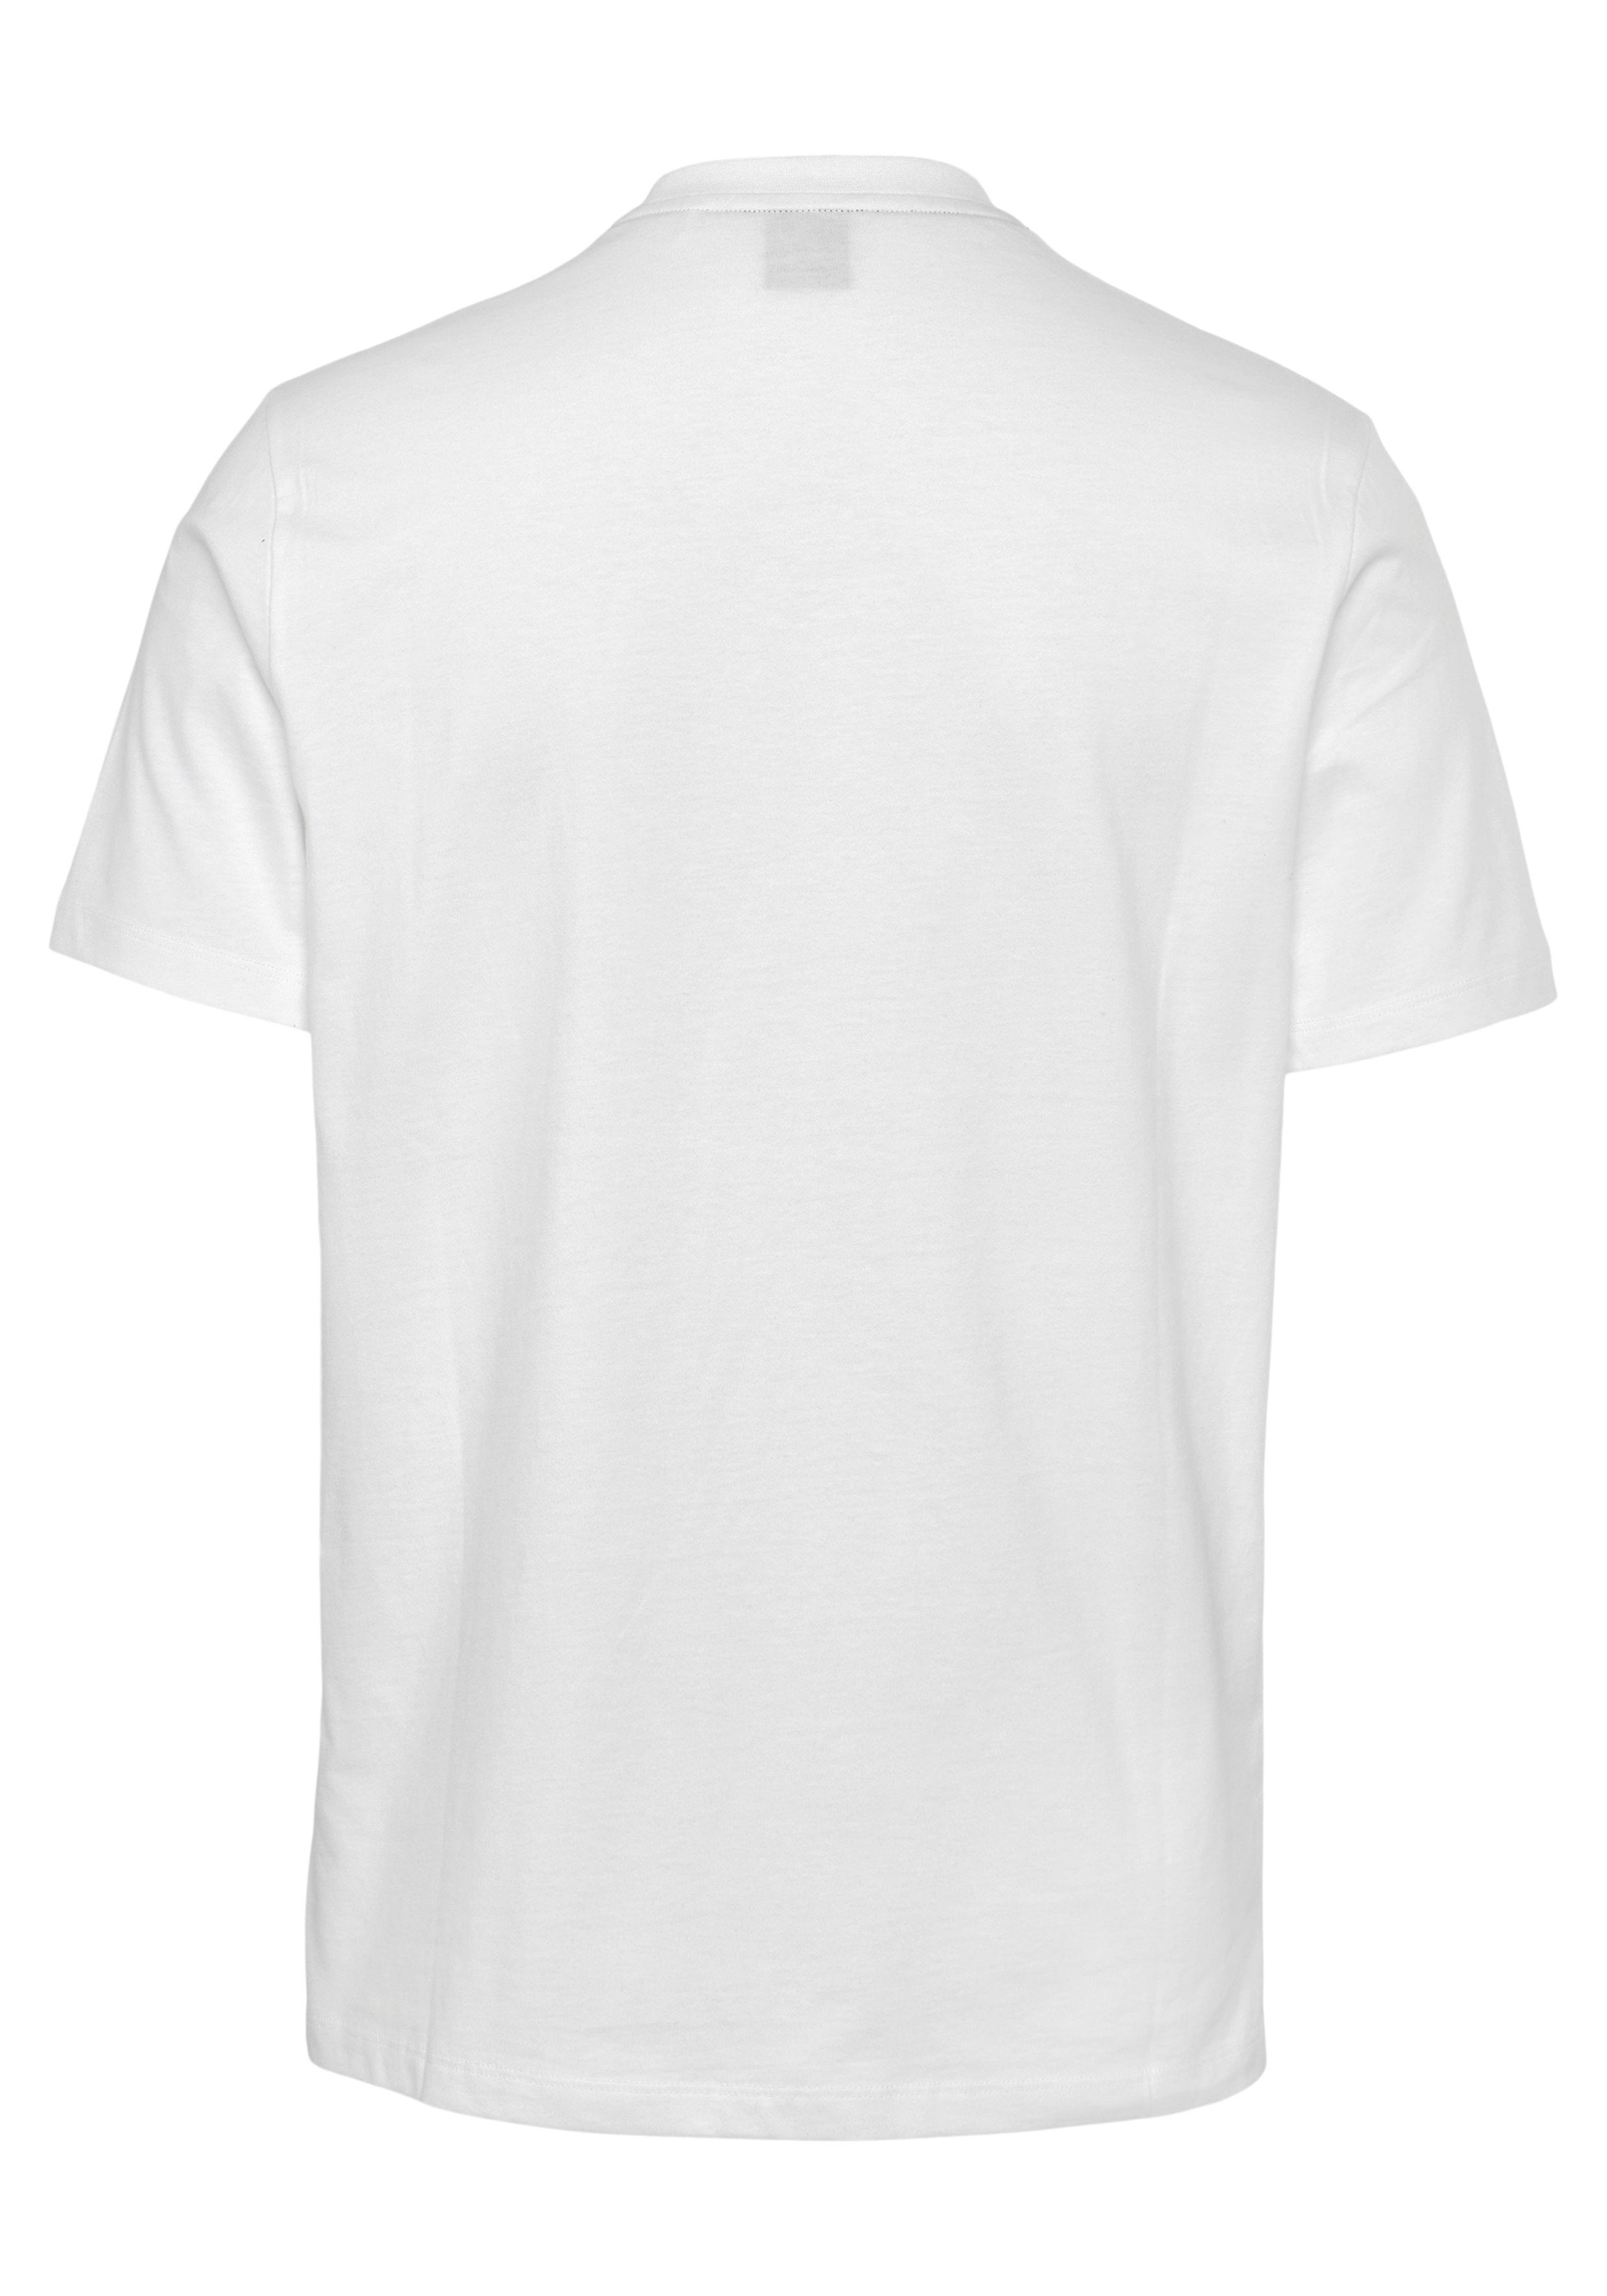 Brusttasche Fashion BOSS aufgesetzter T-Shirt T-Shirt mit